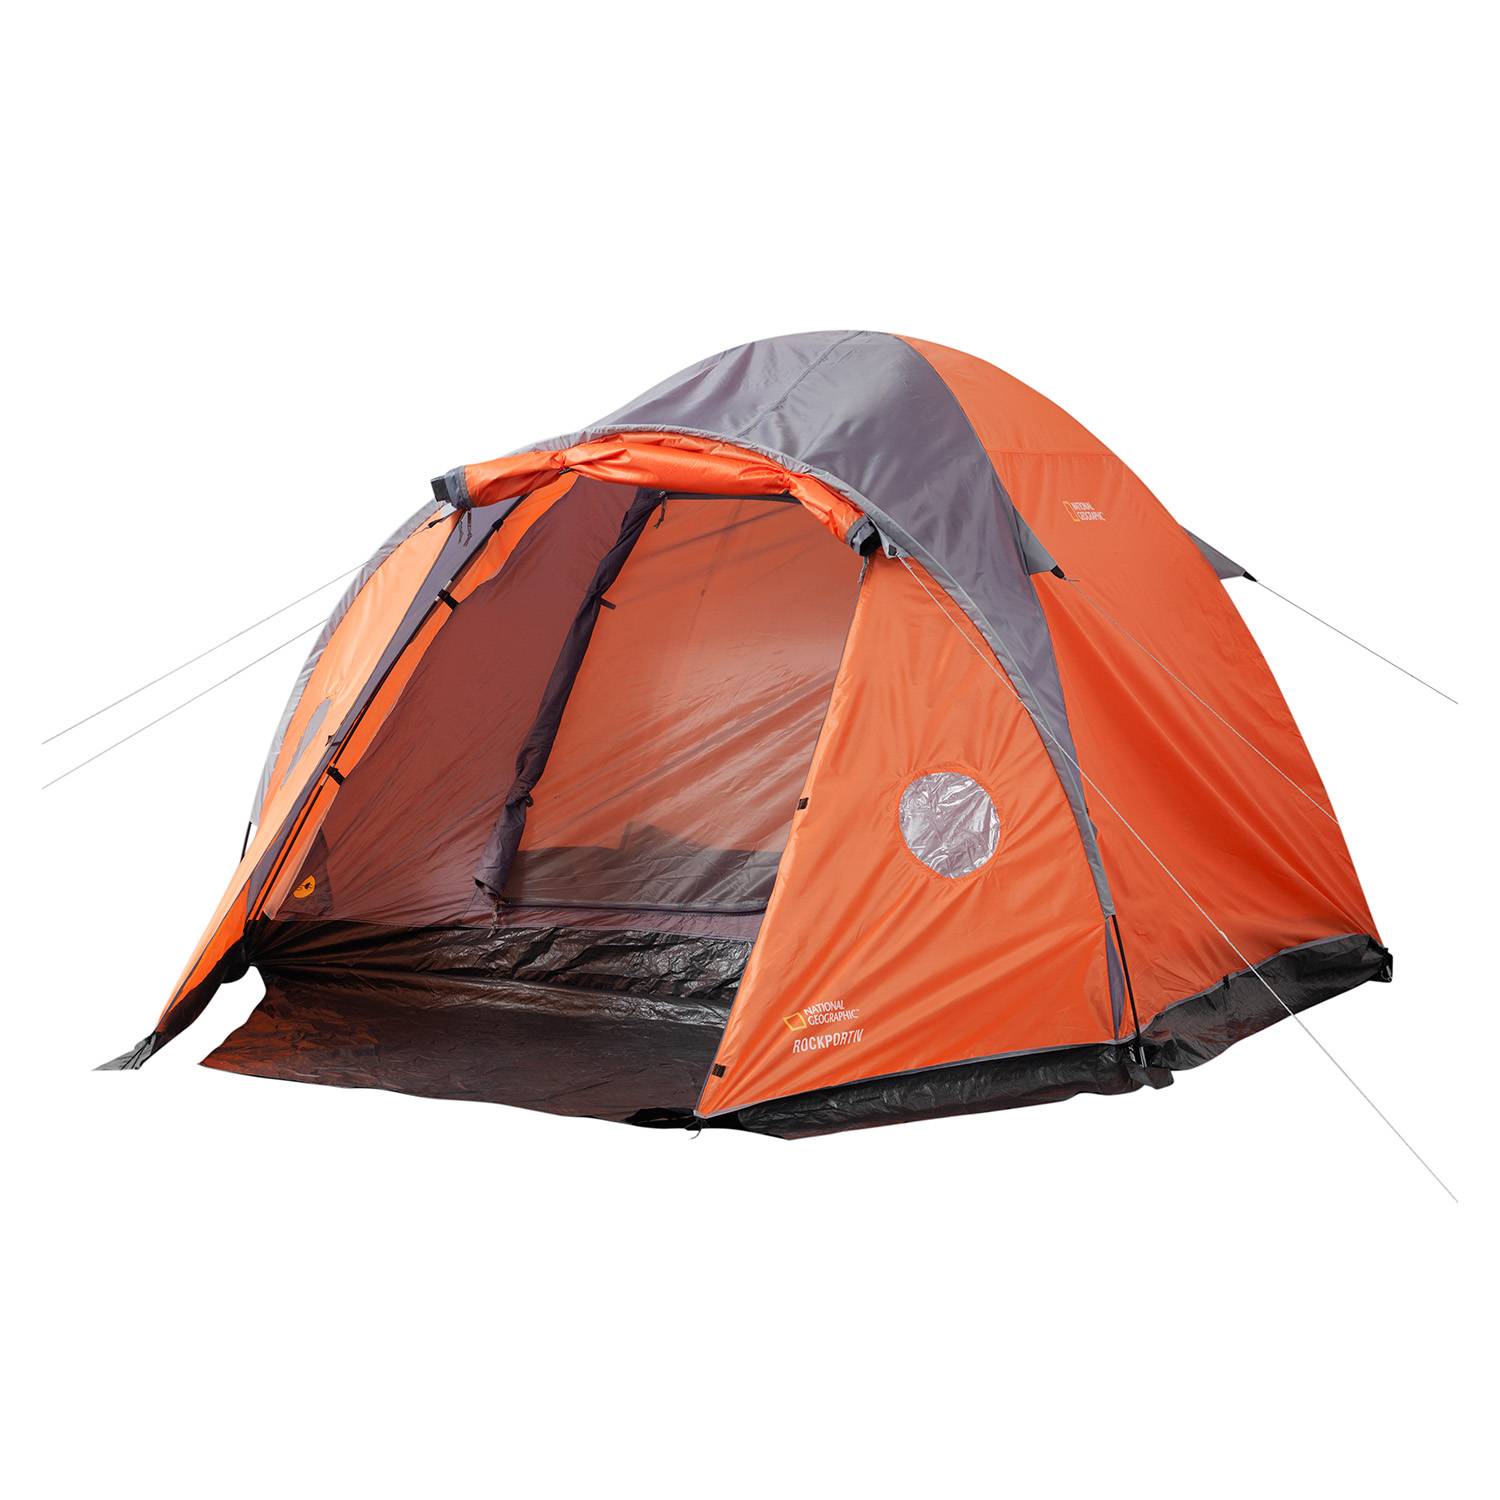 Carpa de camping para 4 personas - Deportes Regol